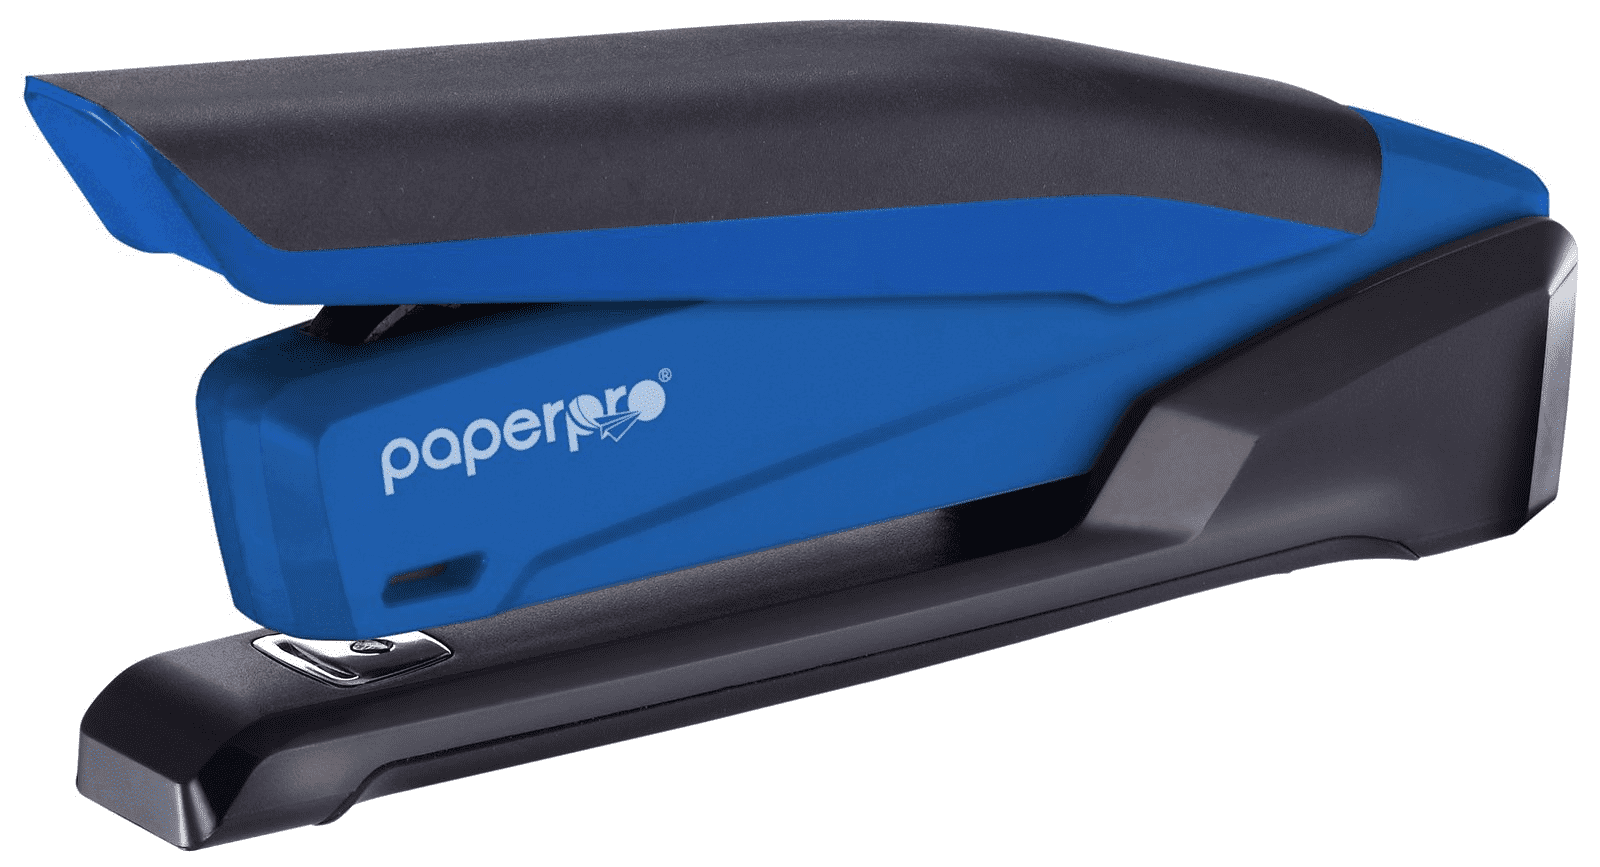 Accentra- Inc. Aci1122 Stapler- Staples 20 Sheets- Rubber Handle- Translucent Blue